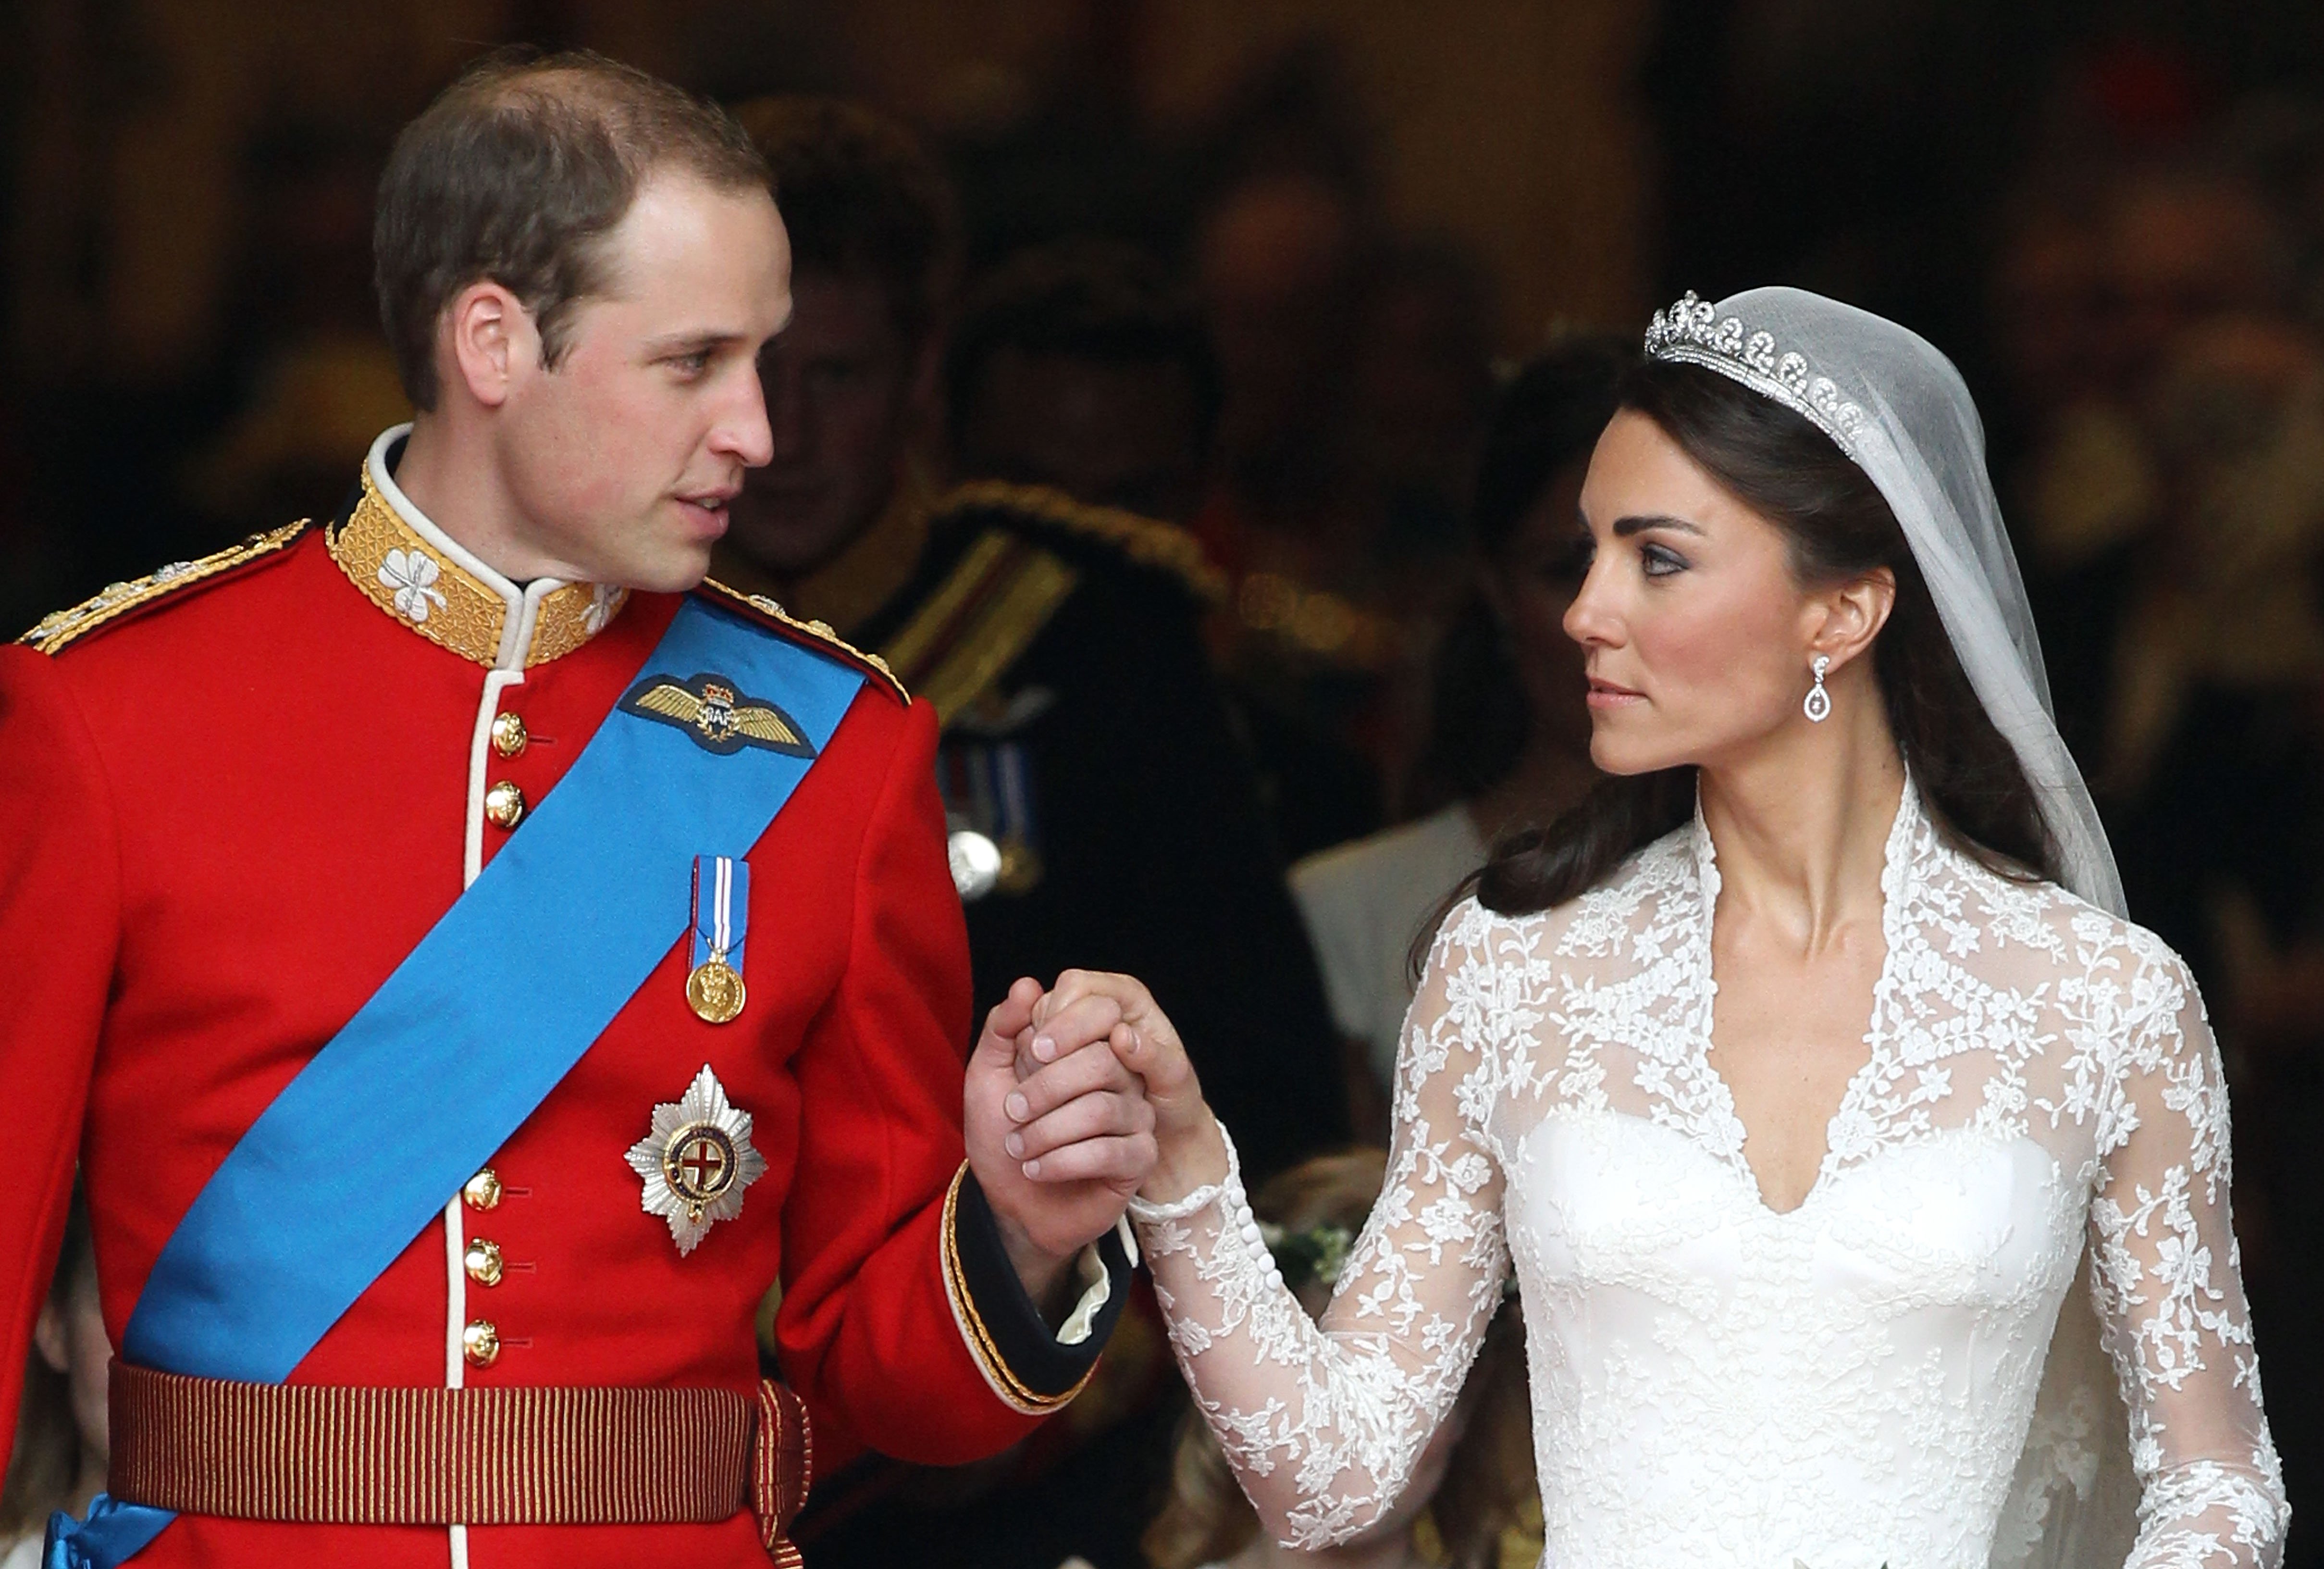 Prinz William und Kate Middleton an ihrem Hochzeitstag in London im Jahr 2011. | Quelle: Getty Images